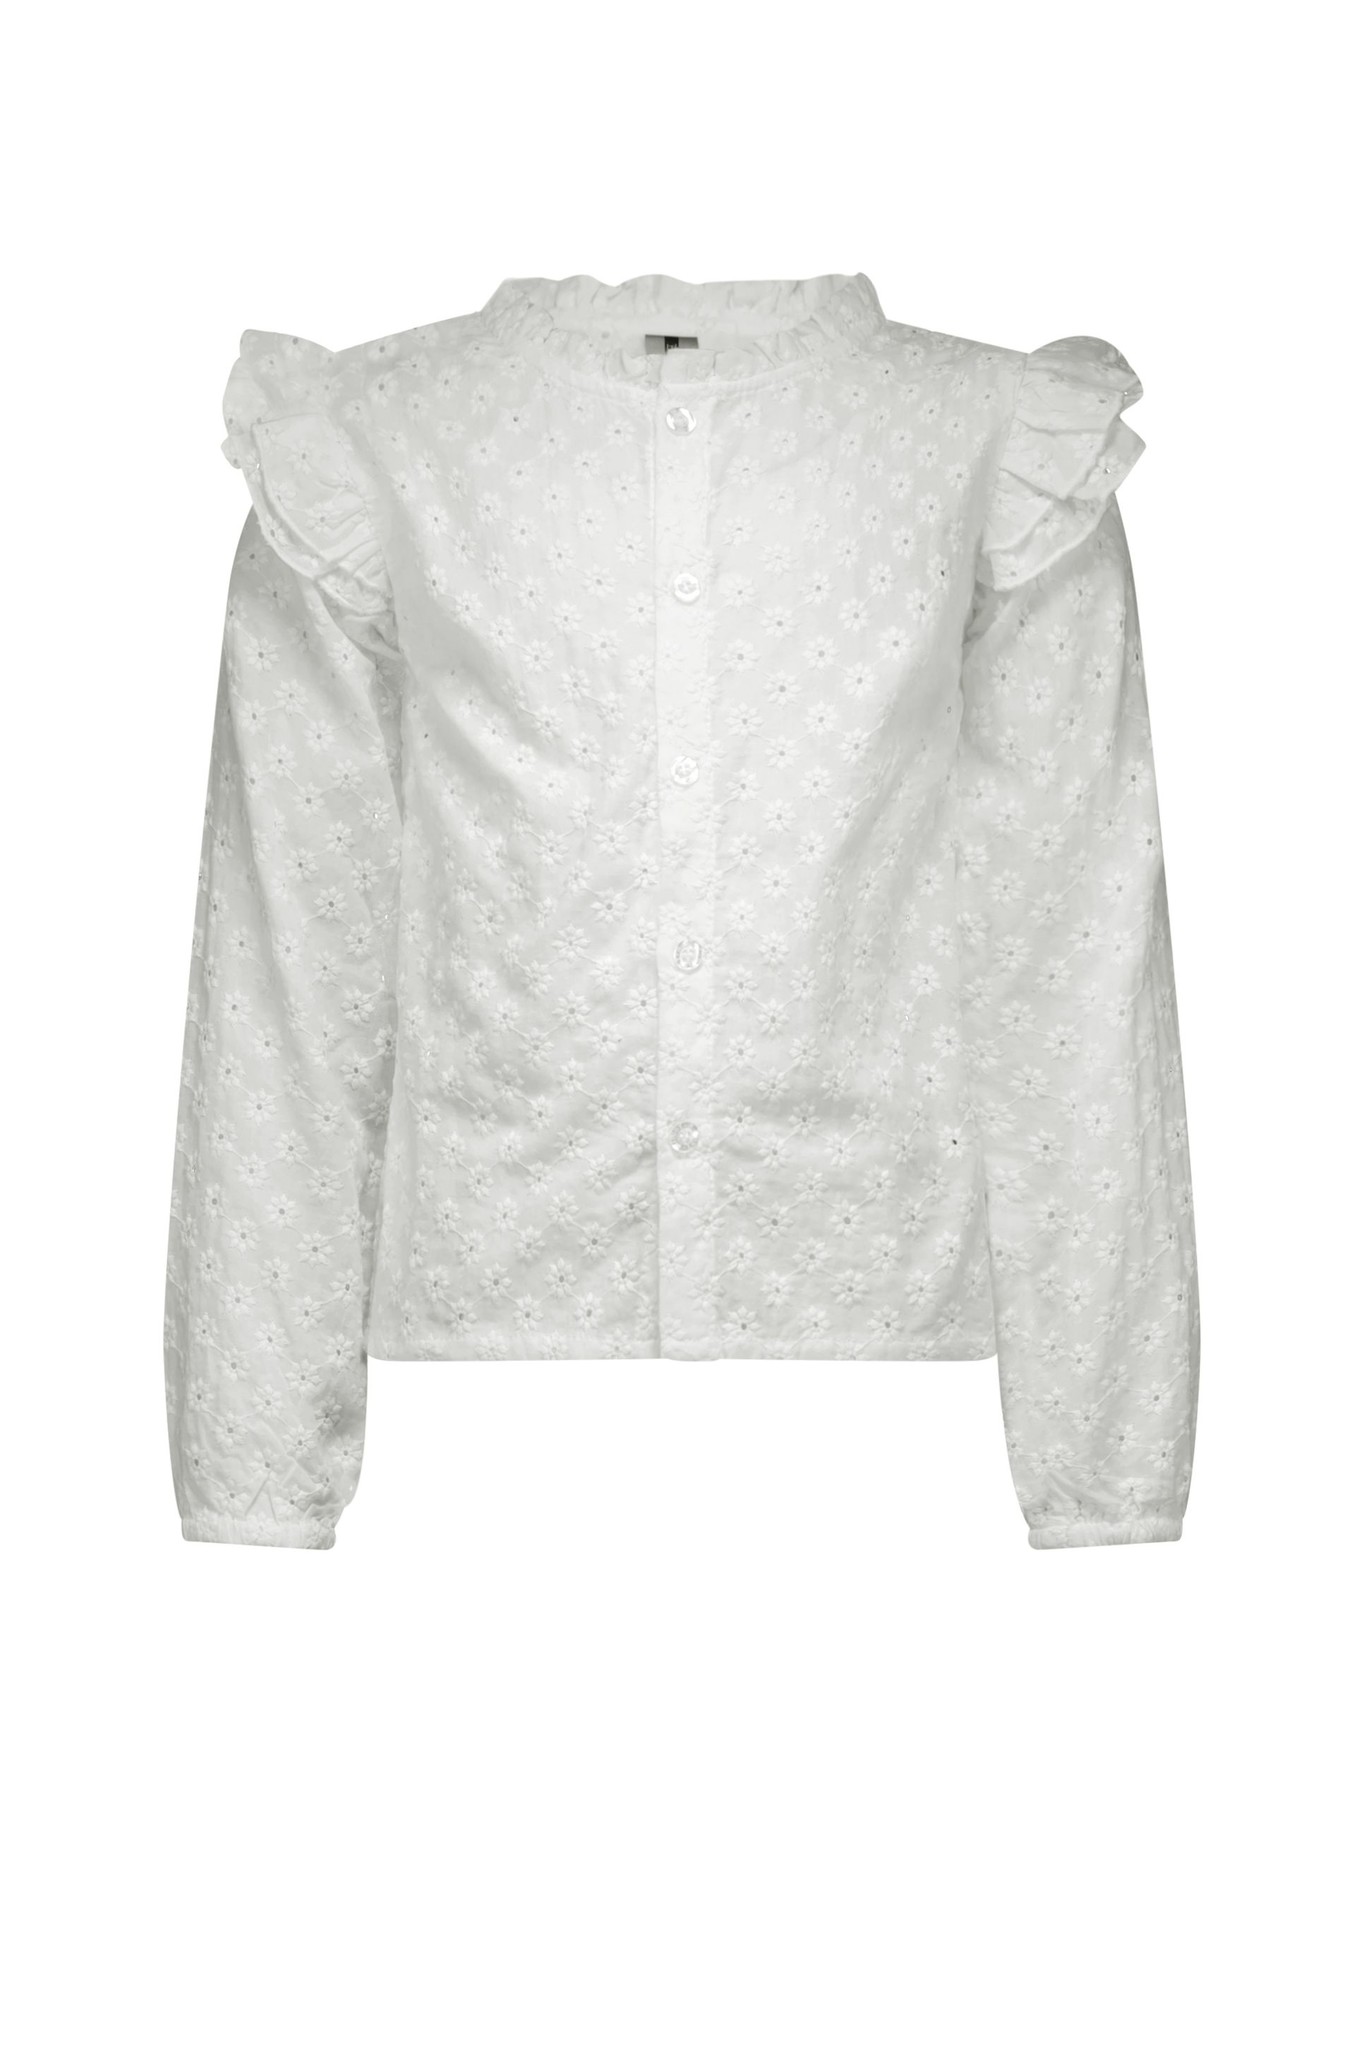 B.Nosy Meisjes blouse - Cotton